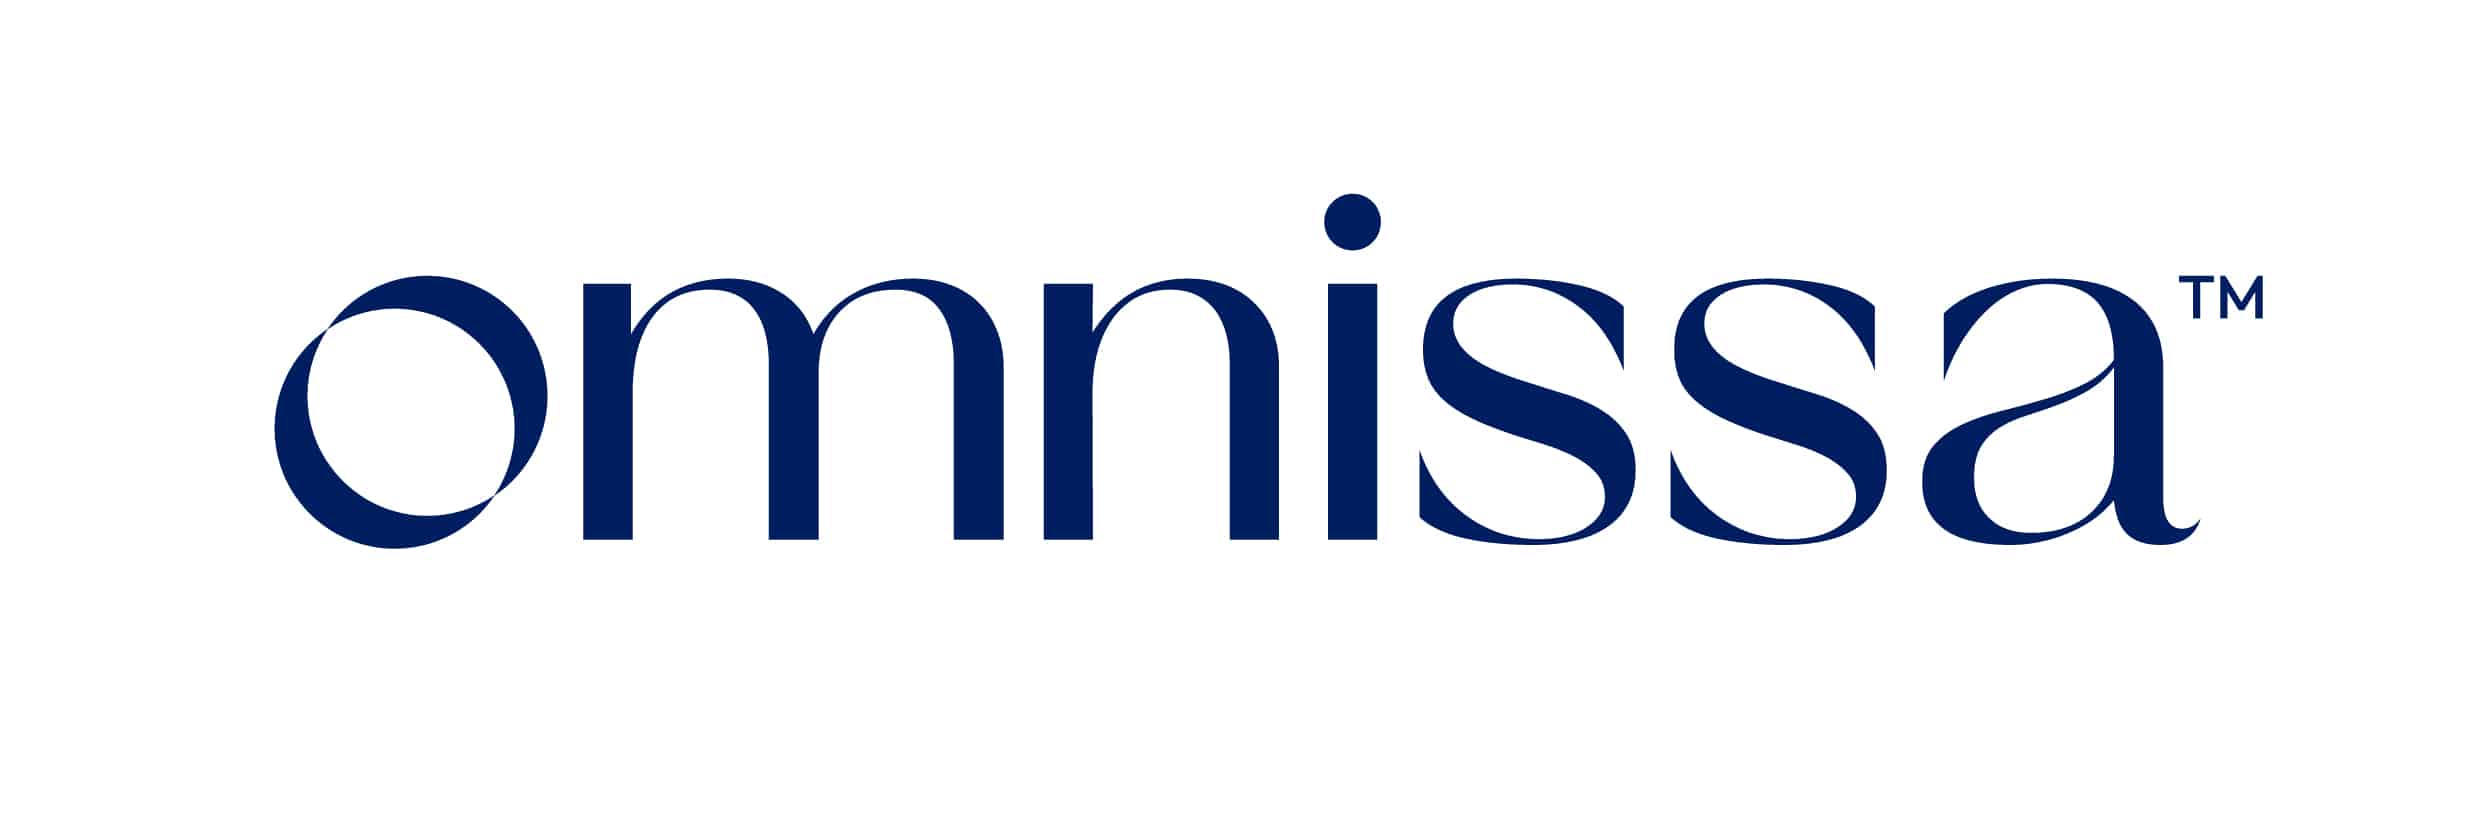 Omnissa_TM-Logo-CLR-RGB